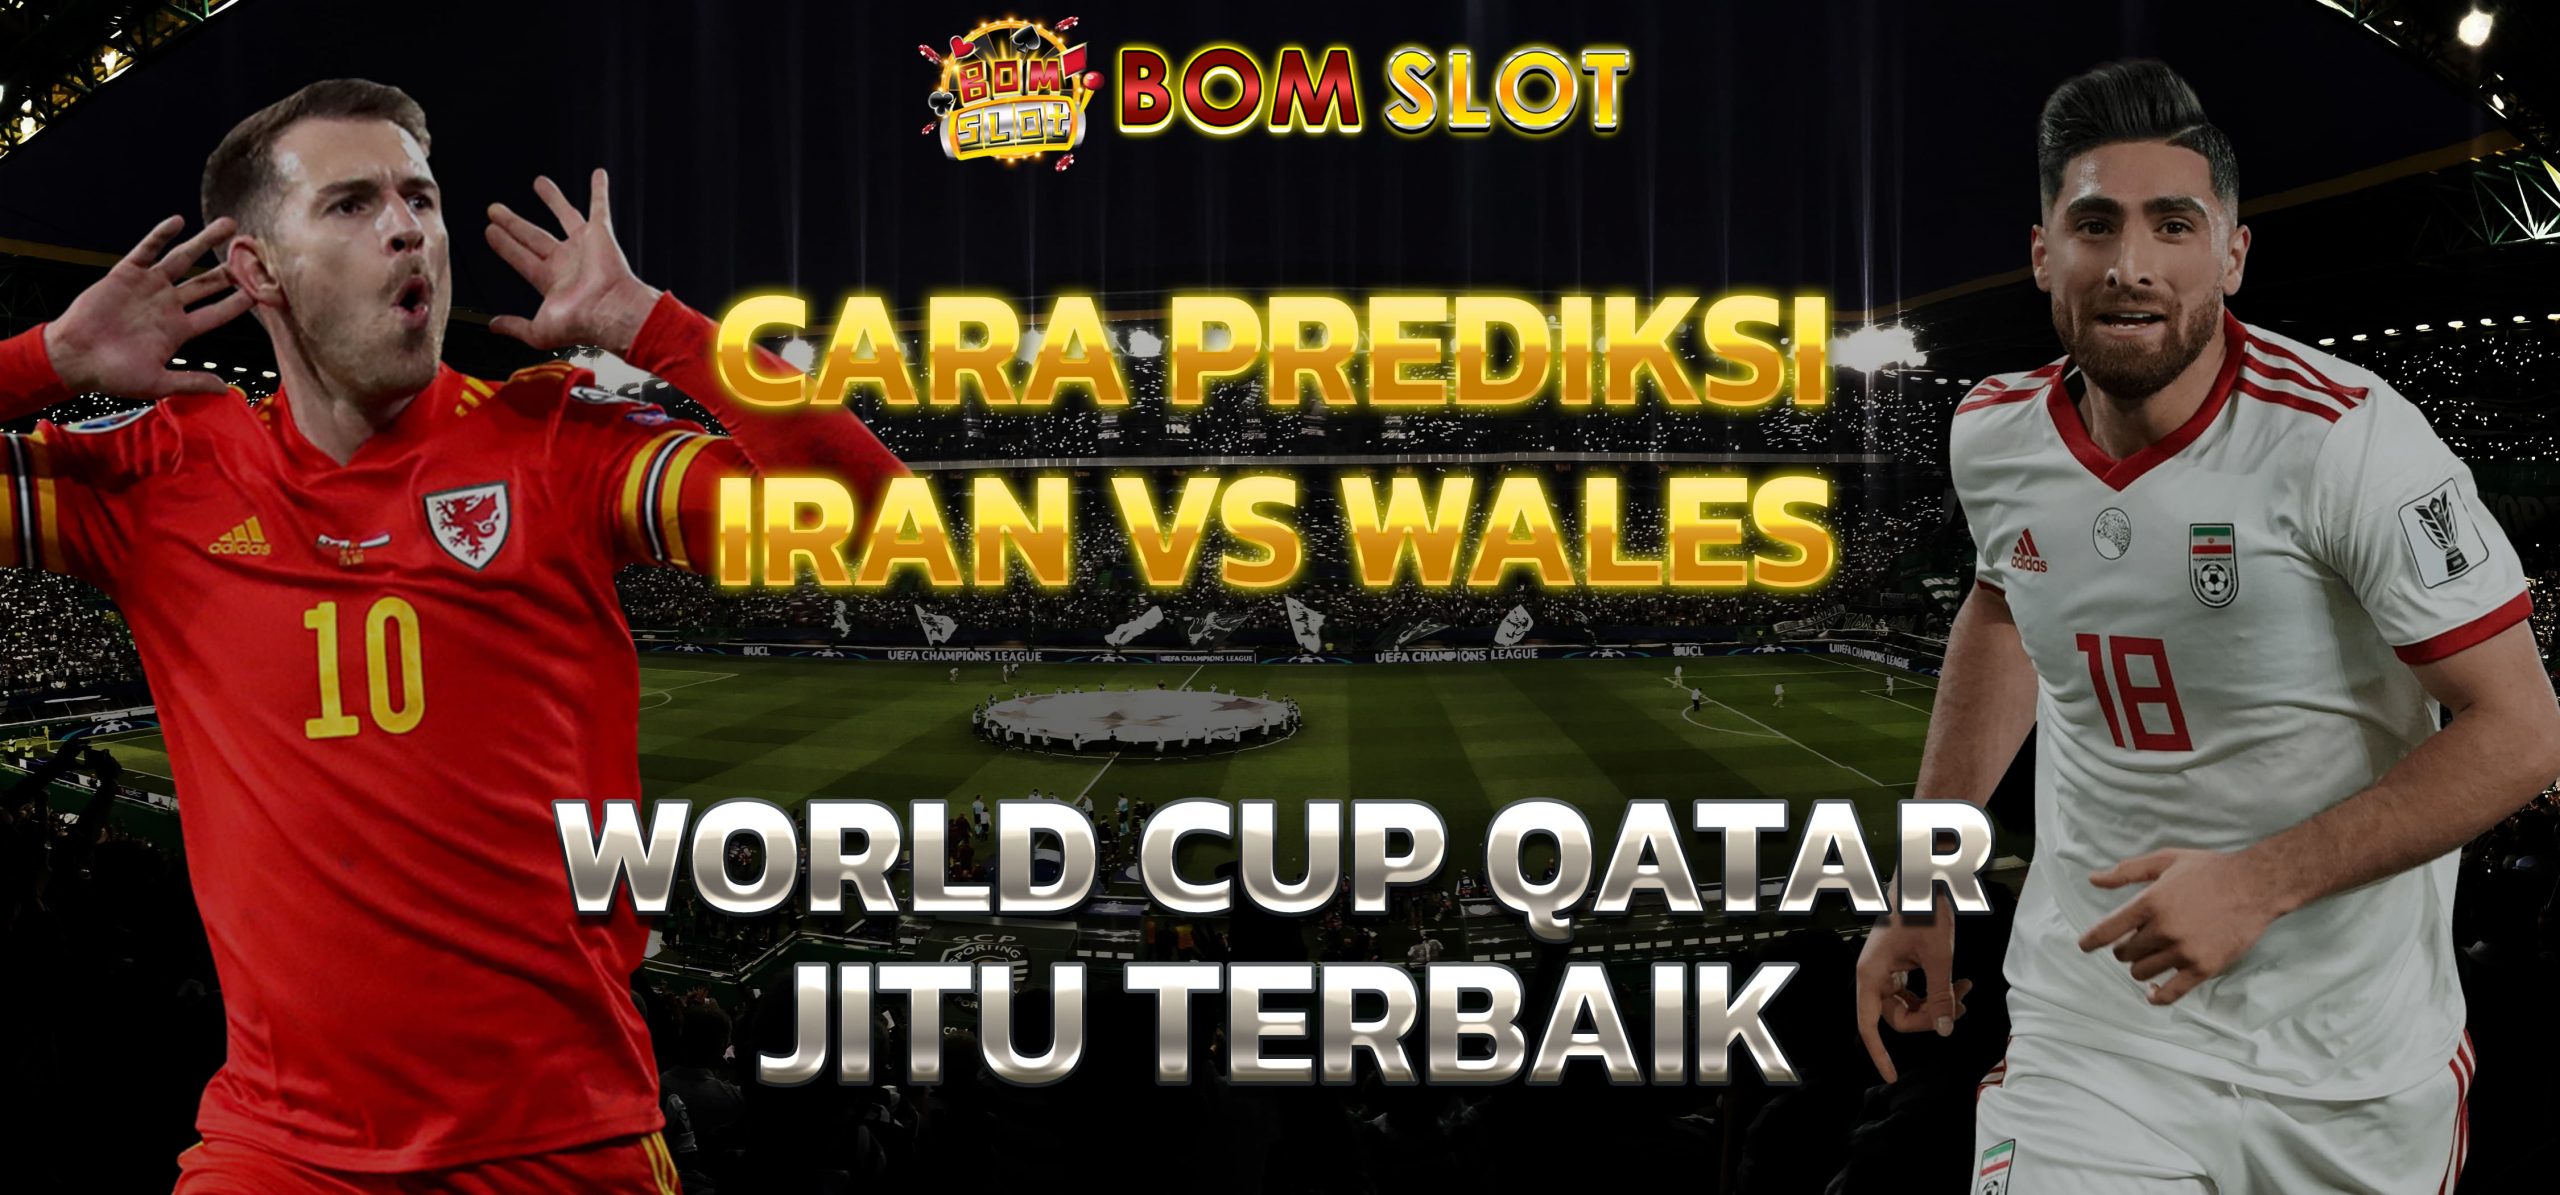 Cara Prediksi Iran vs Wales World Cup Qatar Jitu Terbaik